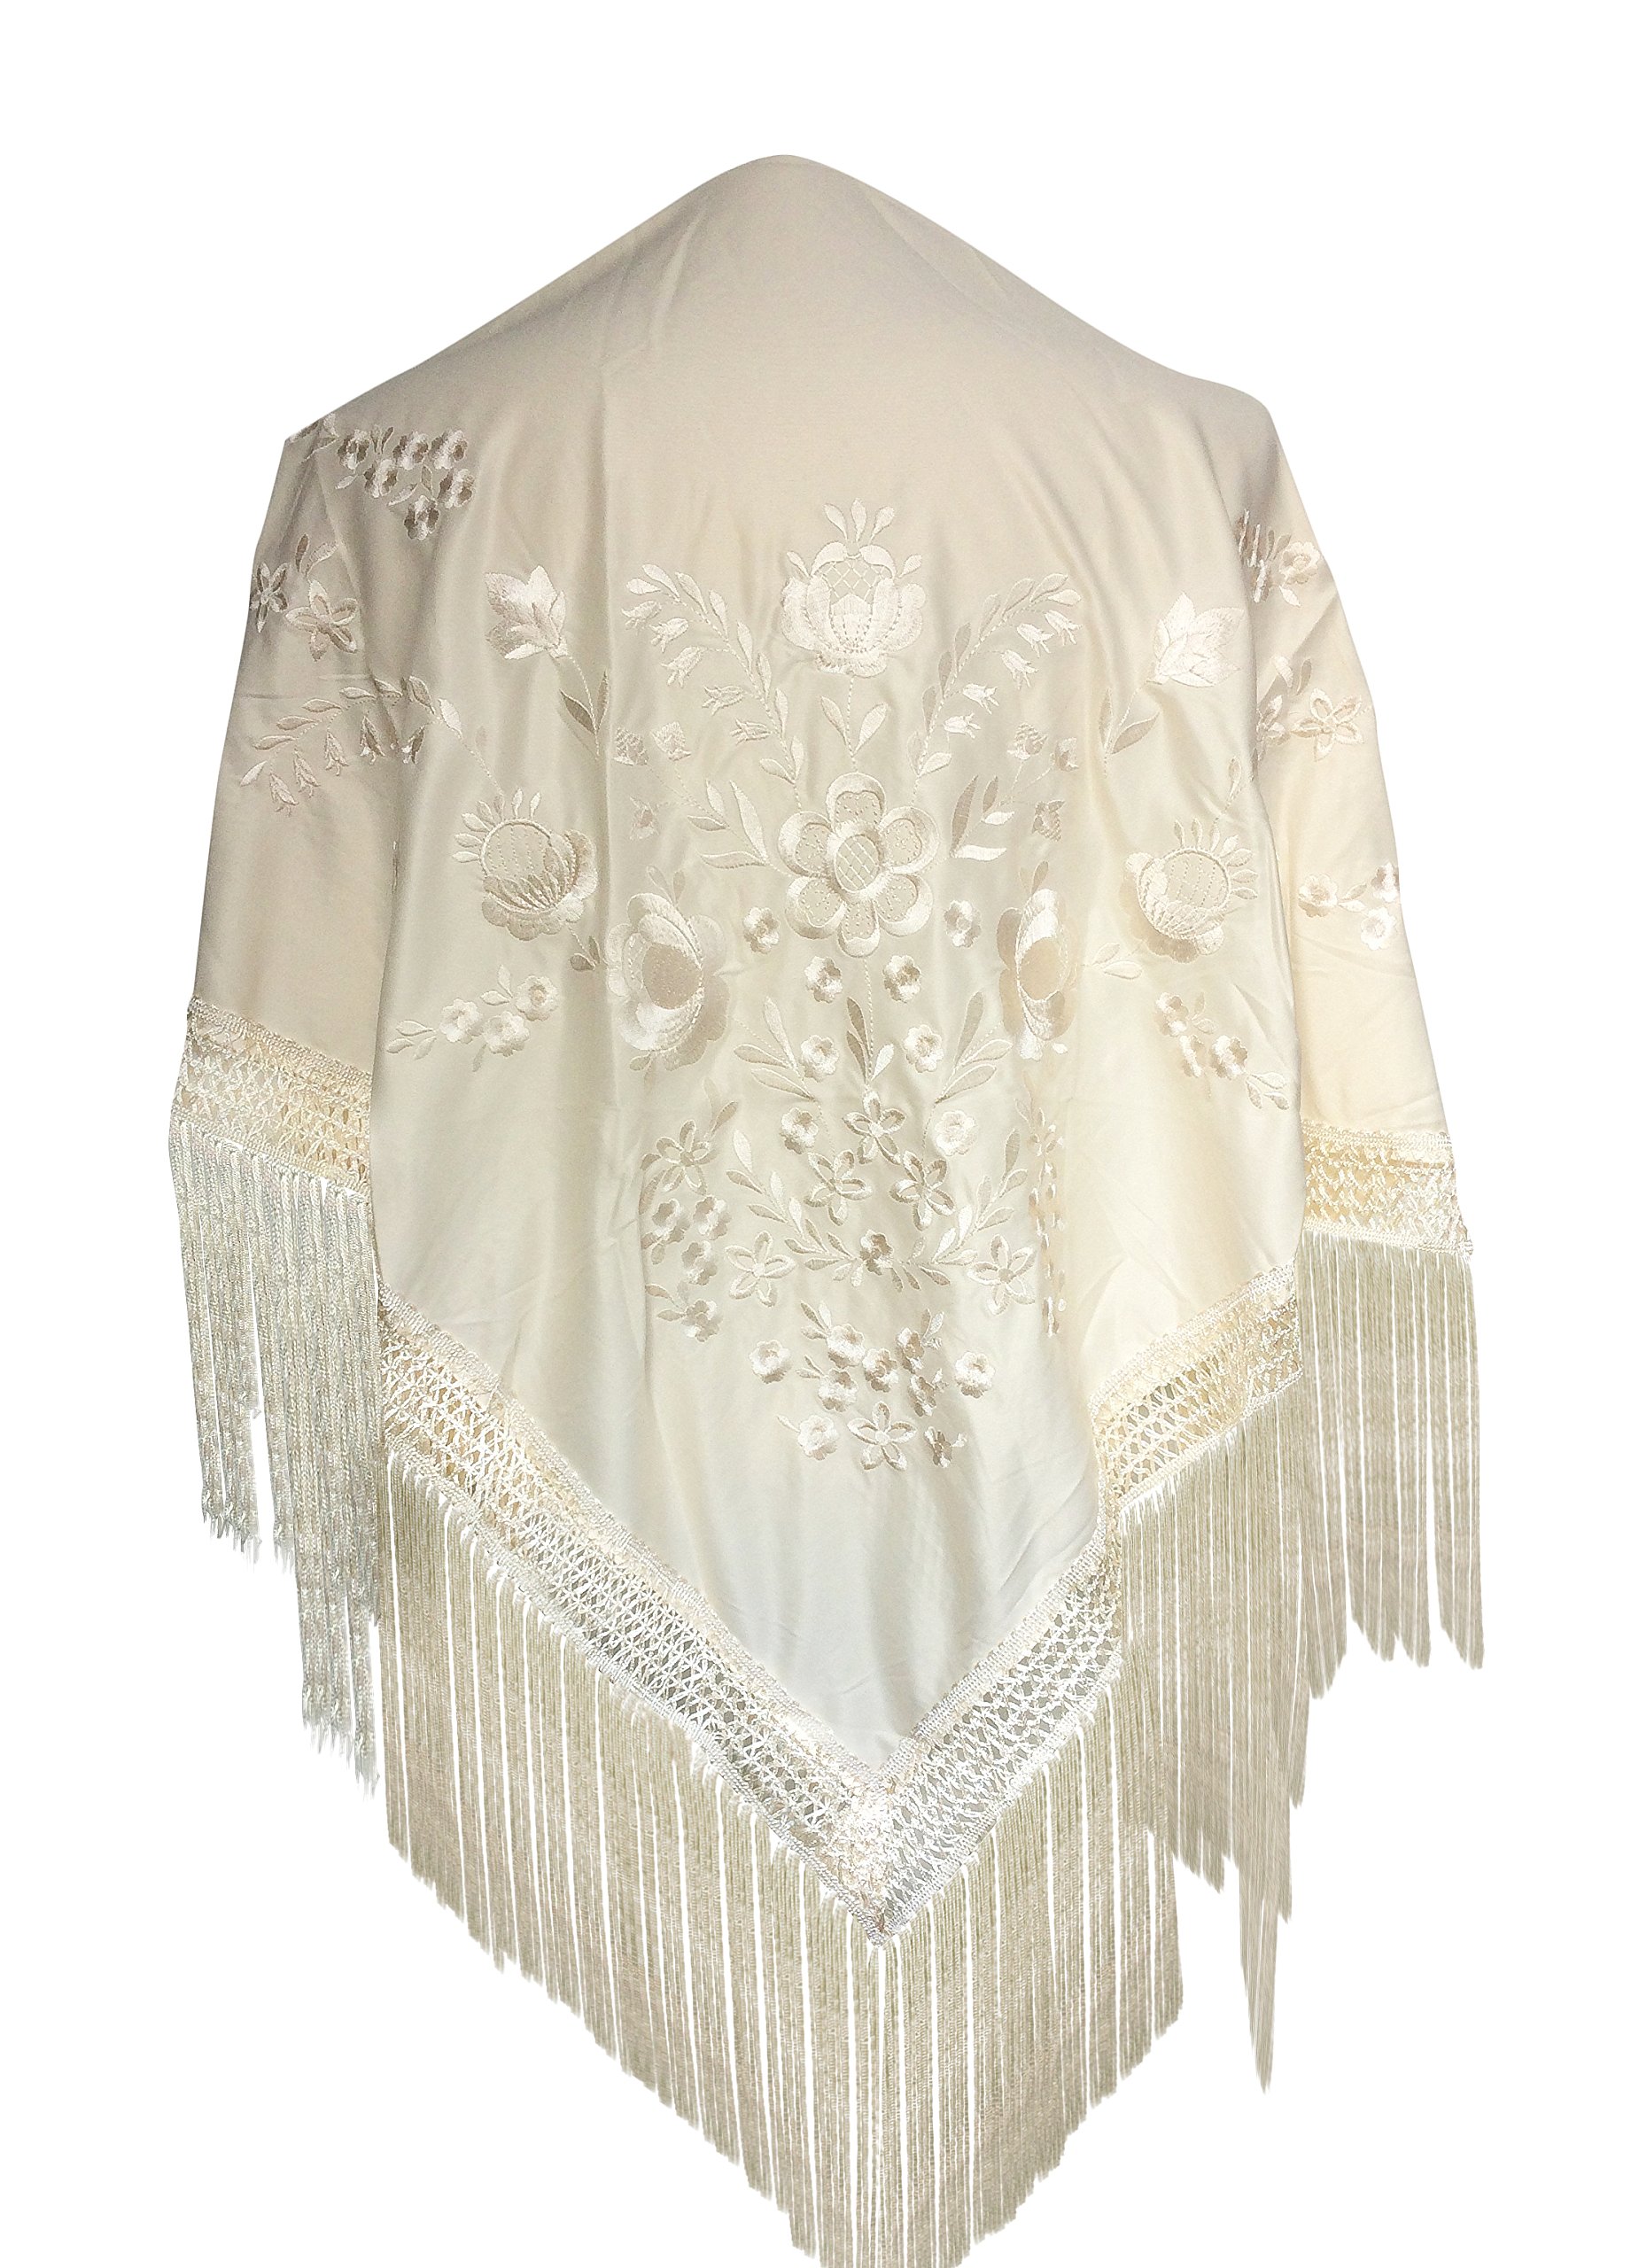 La Senorita Spanischer Manton Tuch Schal bestickt. Flamenco-Tücher für das Fair-, Sevillana- oder Flamenco-Kleid. [160 x 80 cm] Ideale Größe für alle Altersgruppen [Mädchen & Frauen]